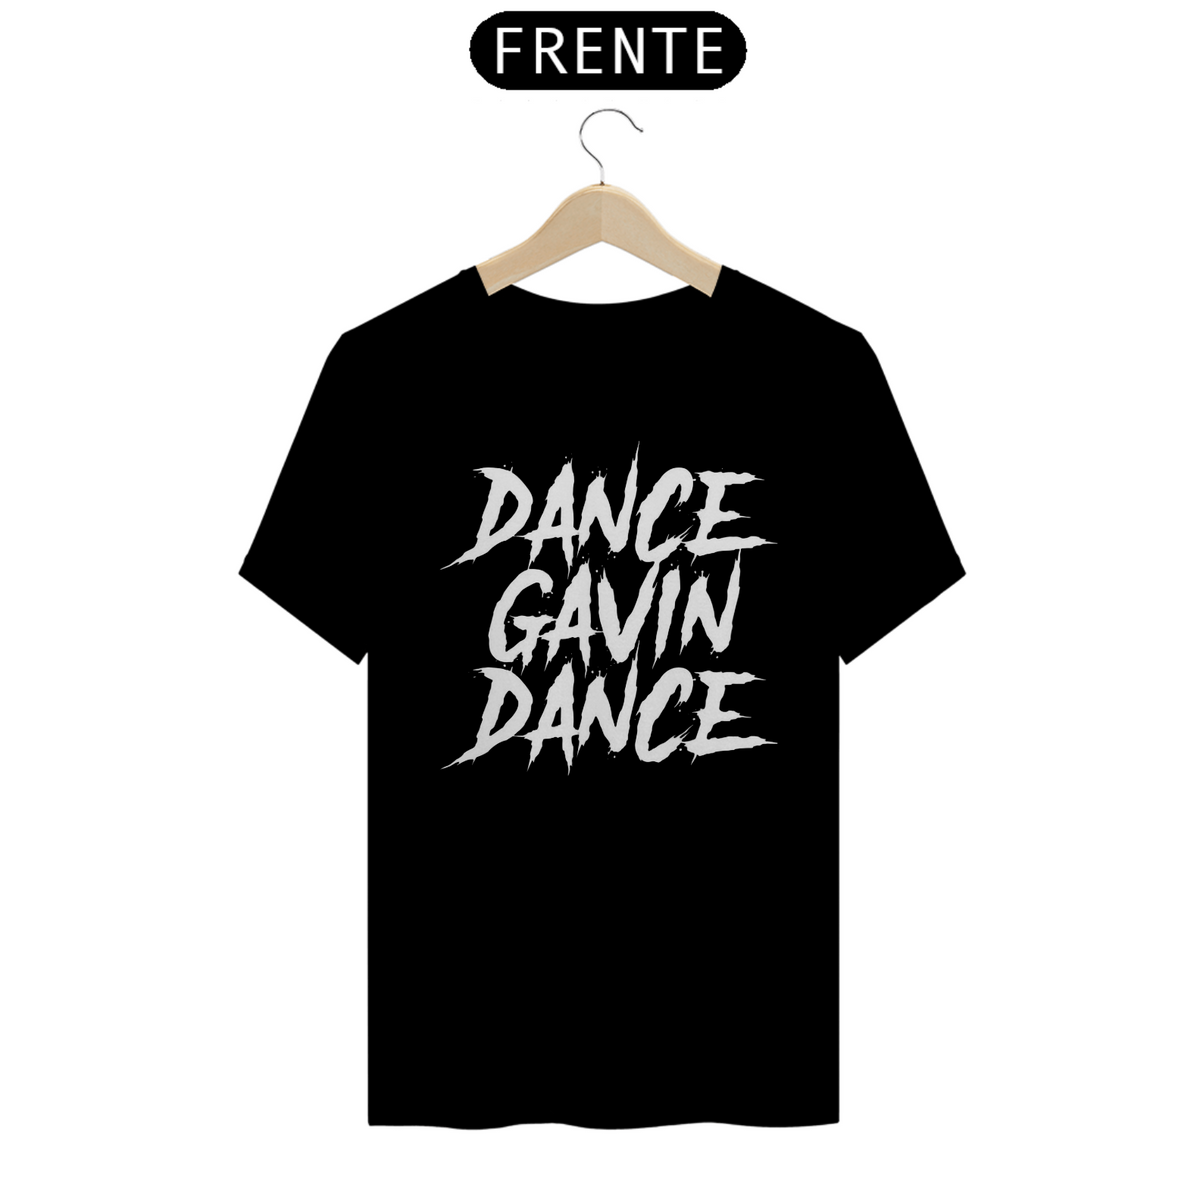 Nome do produto: Dance Gavin Dance